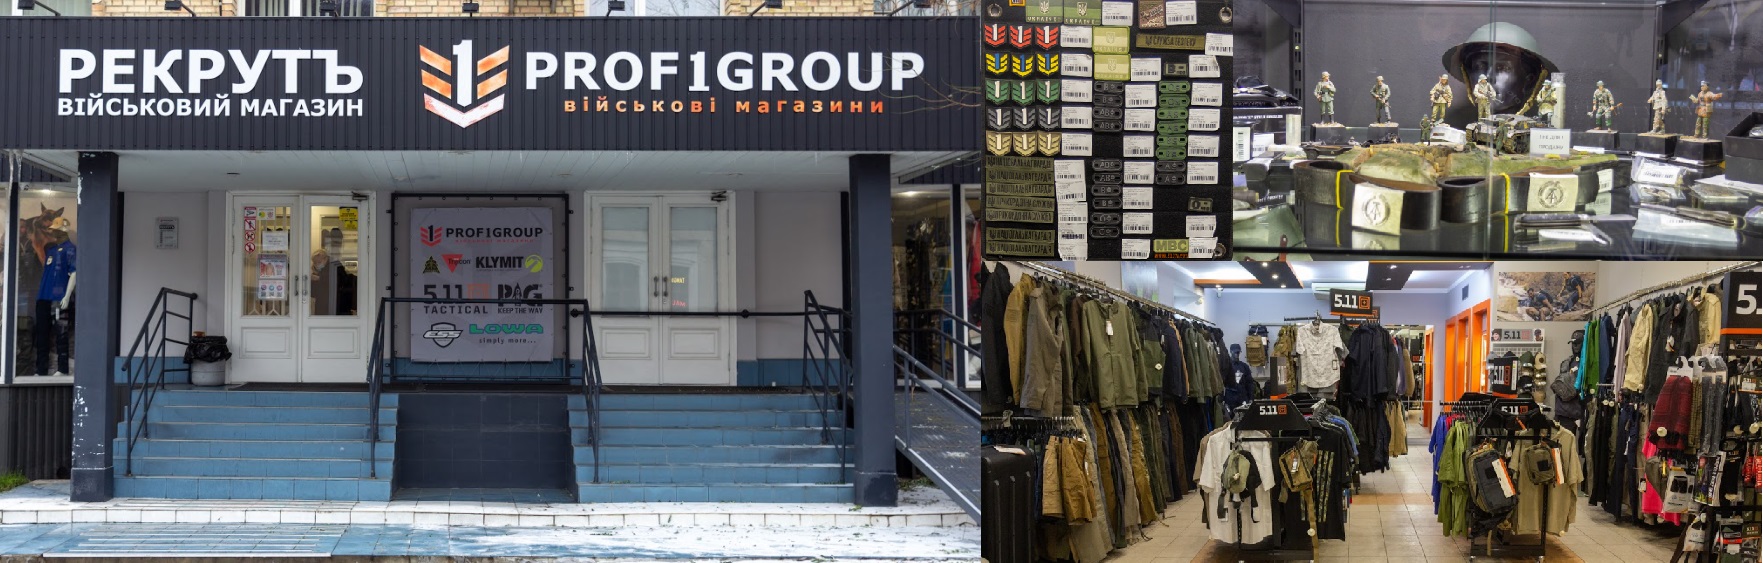 Магазин PROF1Group®, Київ, Рекрутъ, Мережа військових магазинів, спорядження, взуття, одяг